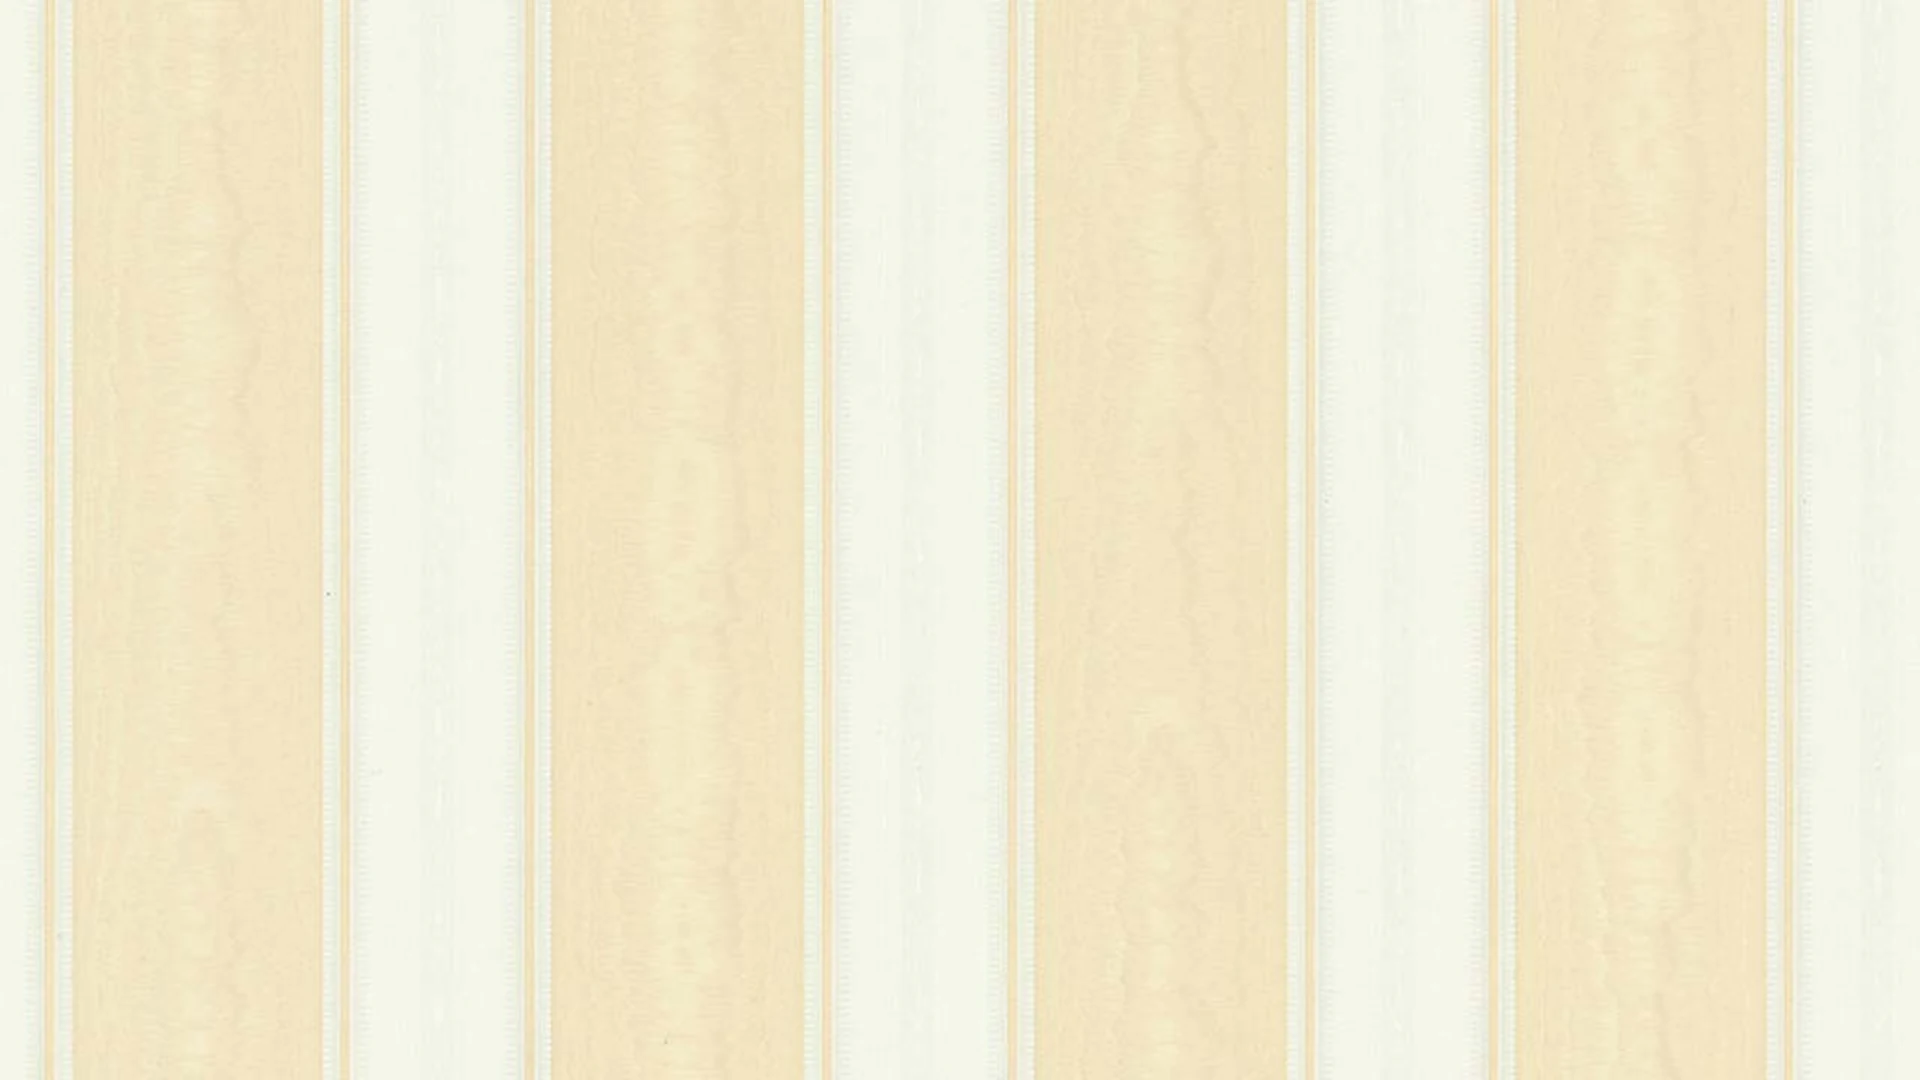 Vinyltapete beige Retro Klassisch Streifen Styleguide Klassisch 2021 826